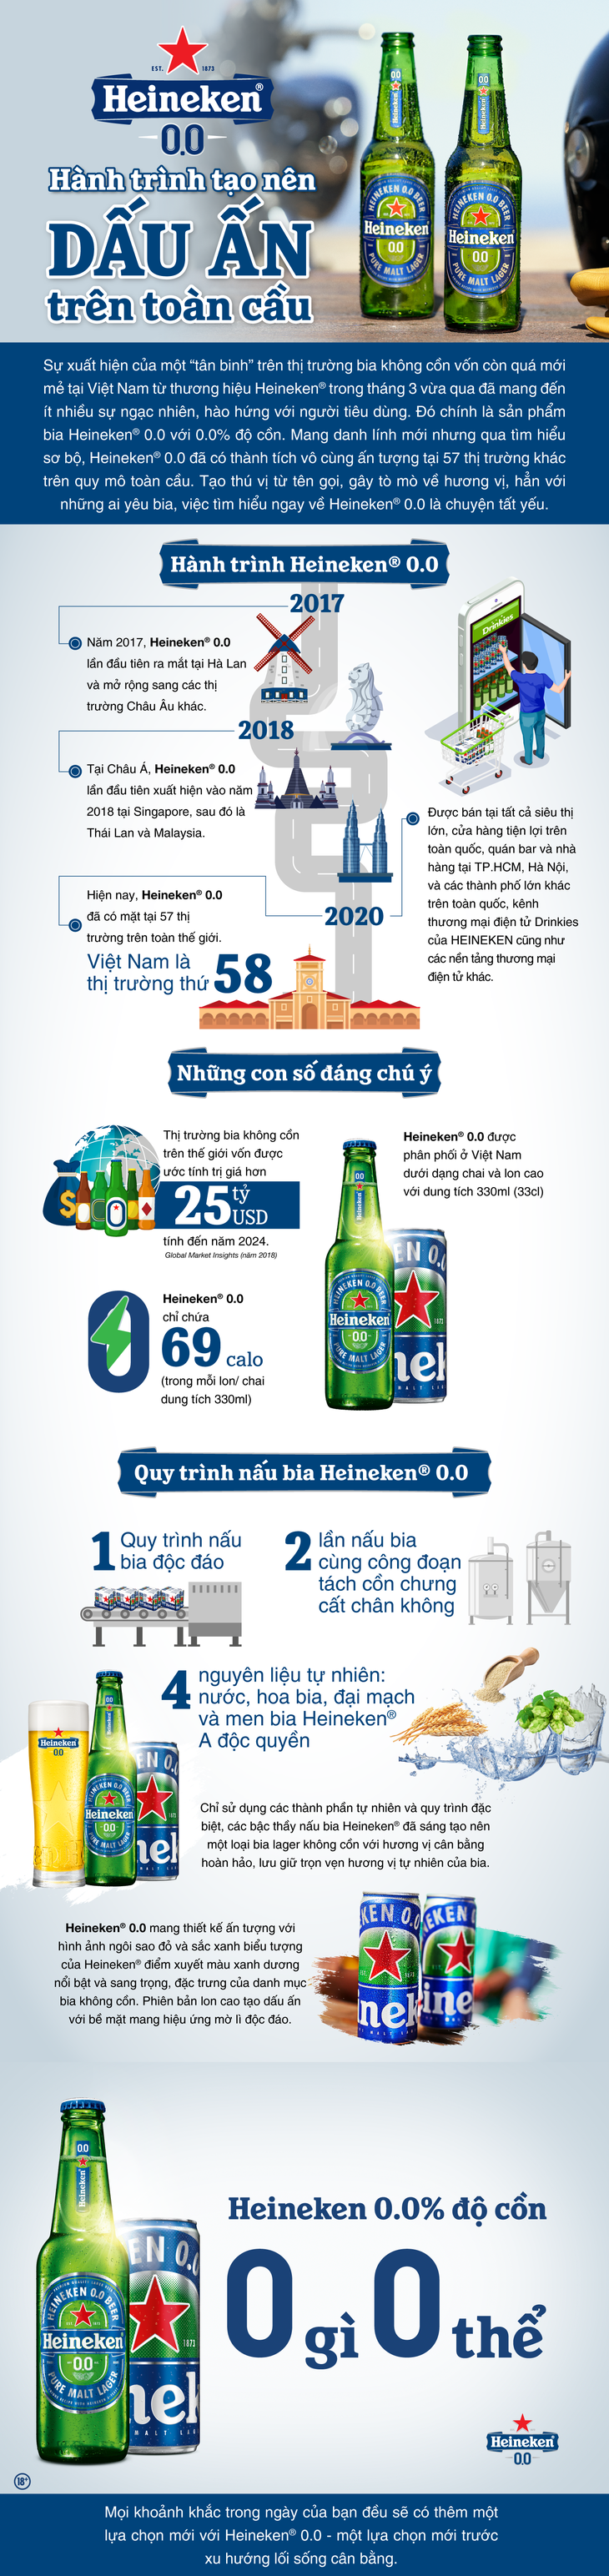 Hành trình tạo nên dấu ấn toàn cầu của Heineken® 0.0 - Ảnh 1.